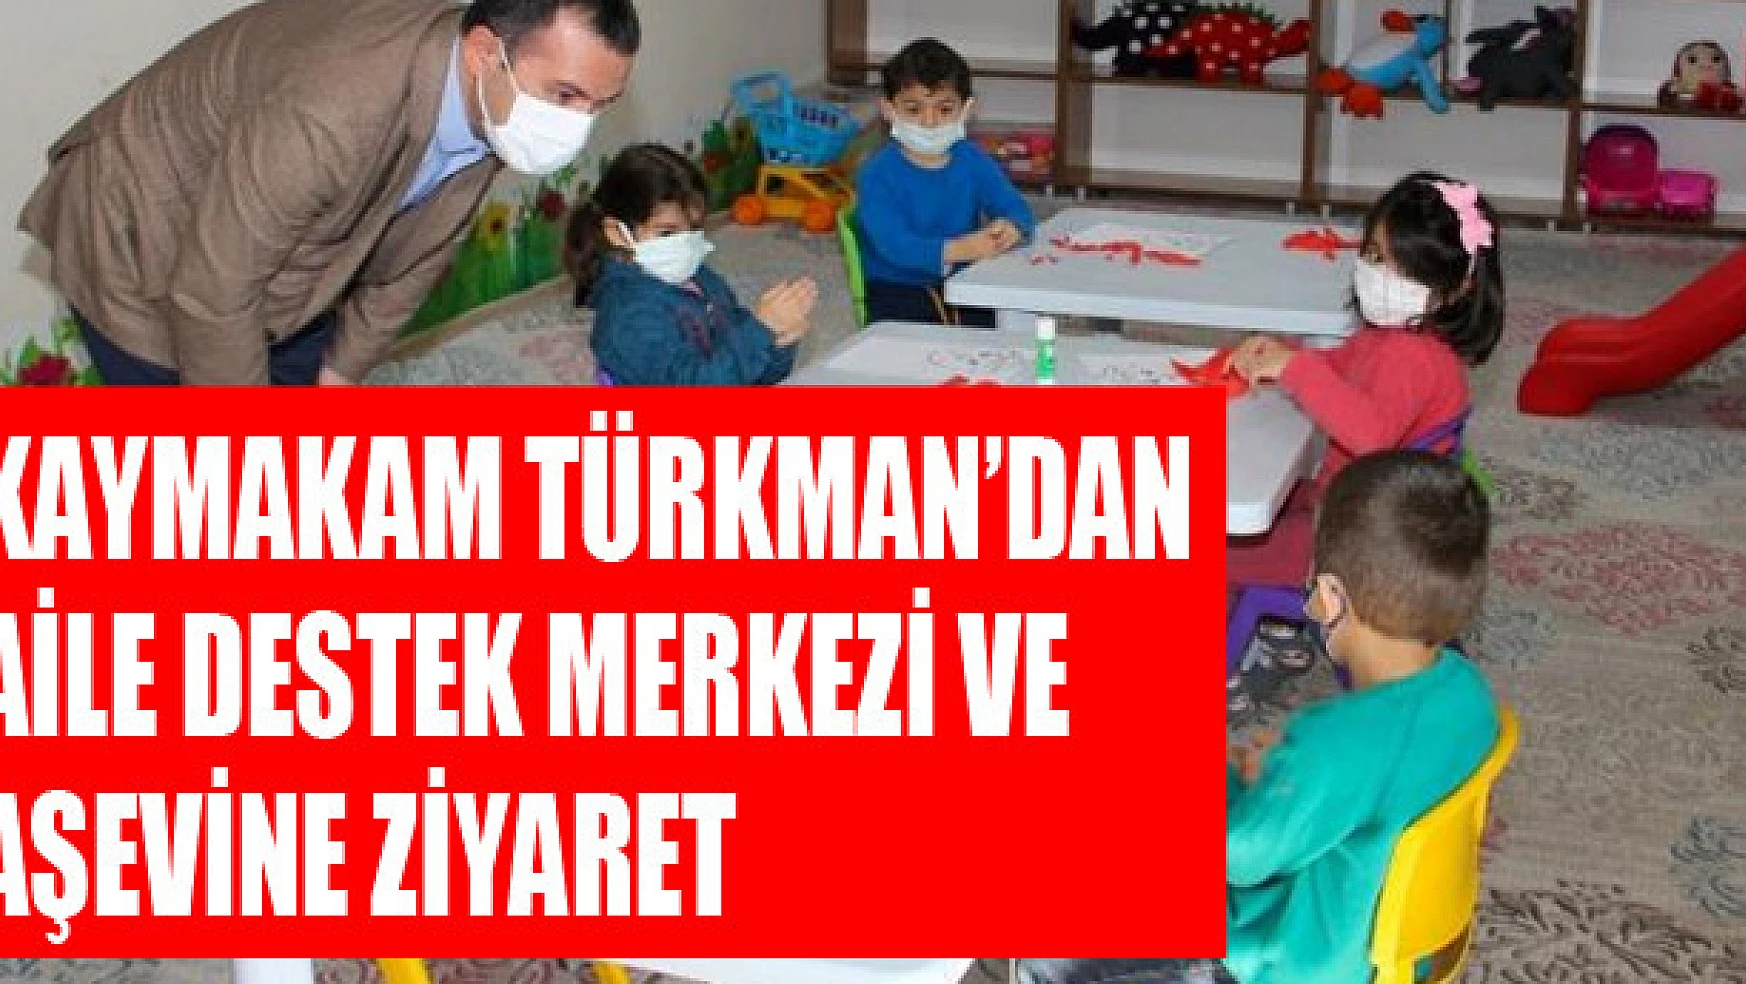 Kaymakam Türkman'dan aile destek merkezi ve aşevine ziyaret